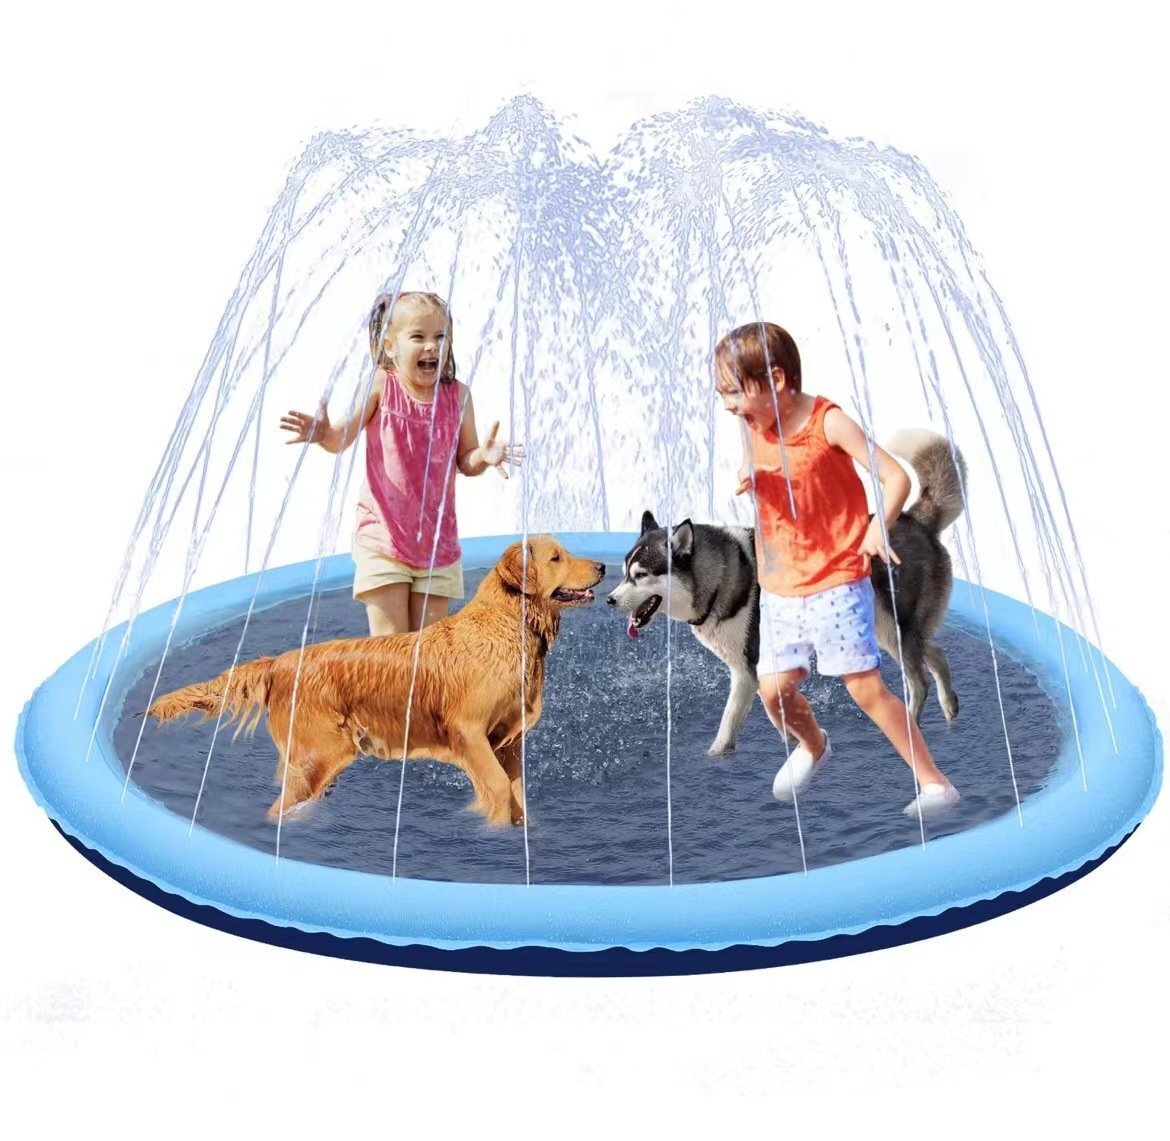  фонтан коврик фонтан бассейн ребенок для домашних животных родители . развлечение бассейн уличный лето меры для бытового использования диаметр 170cm 754